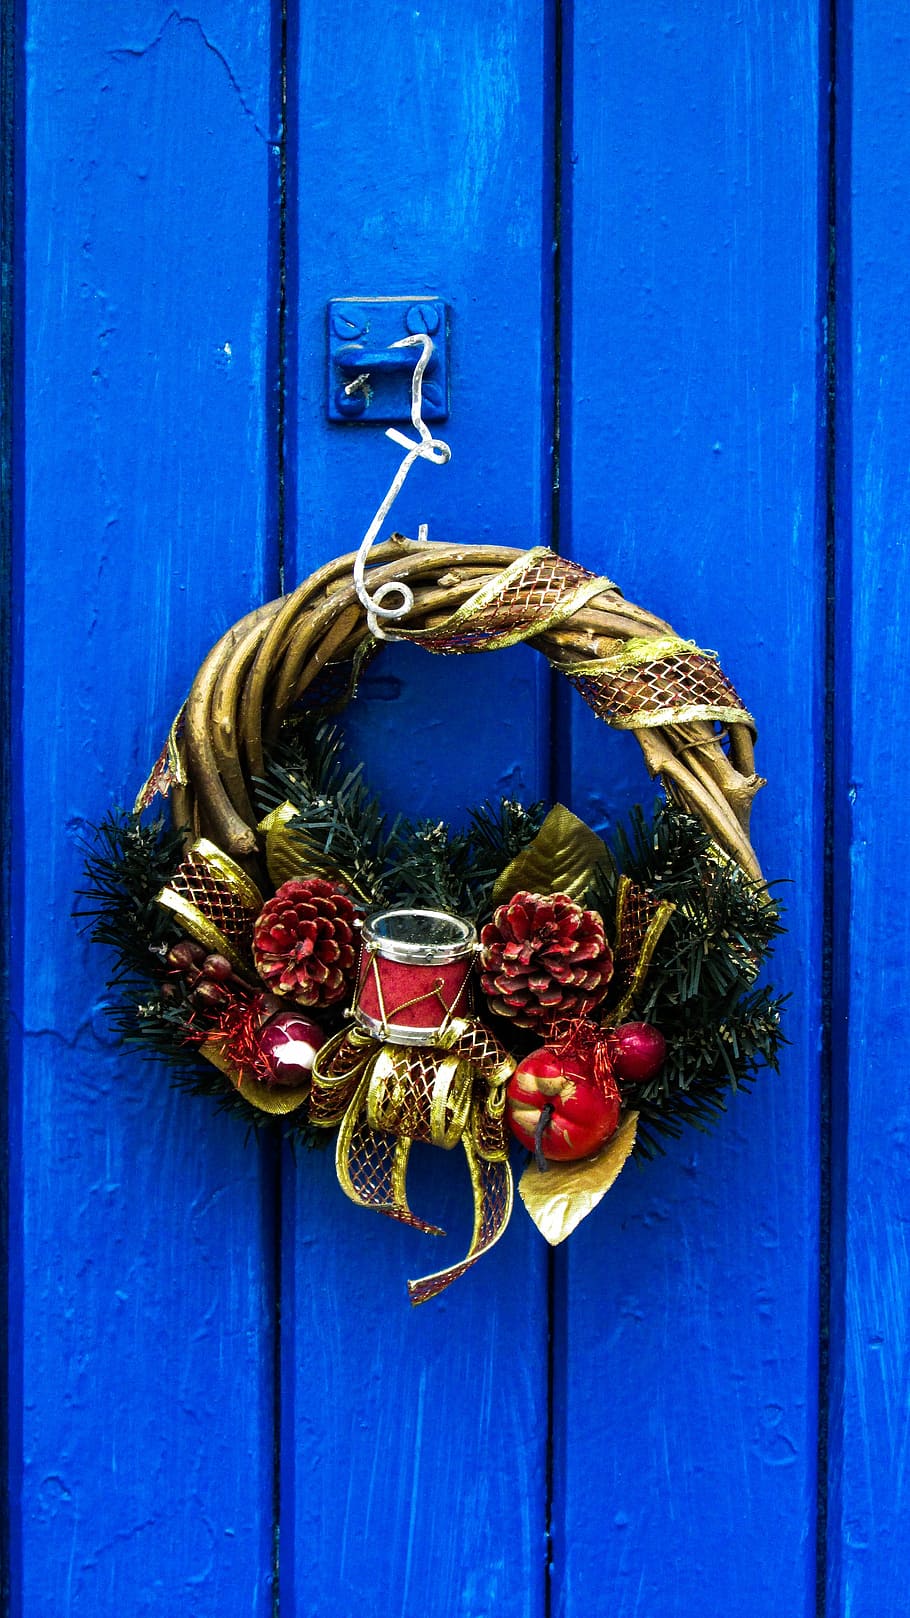 pintu, natal, musim, liburan, dekorasi, desember, tradisional, biru, pedesaan, desa